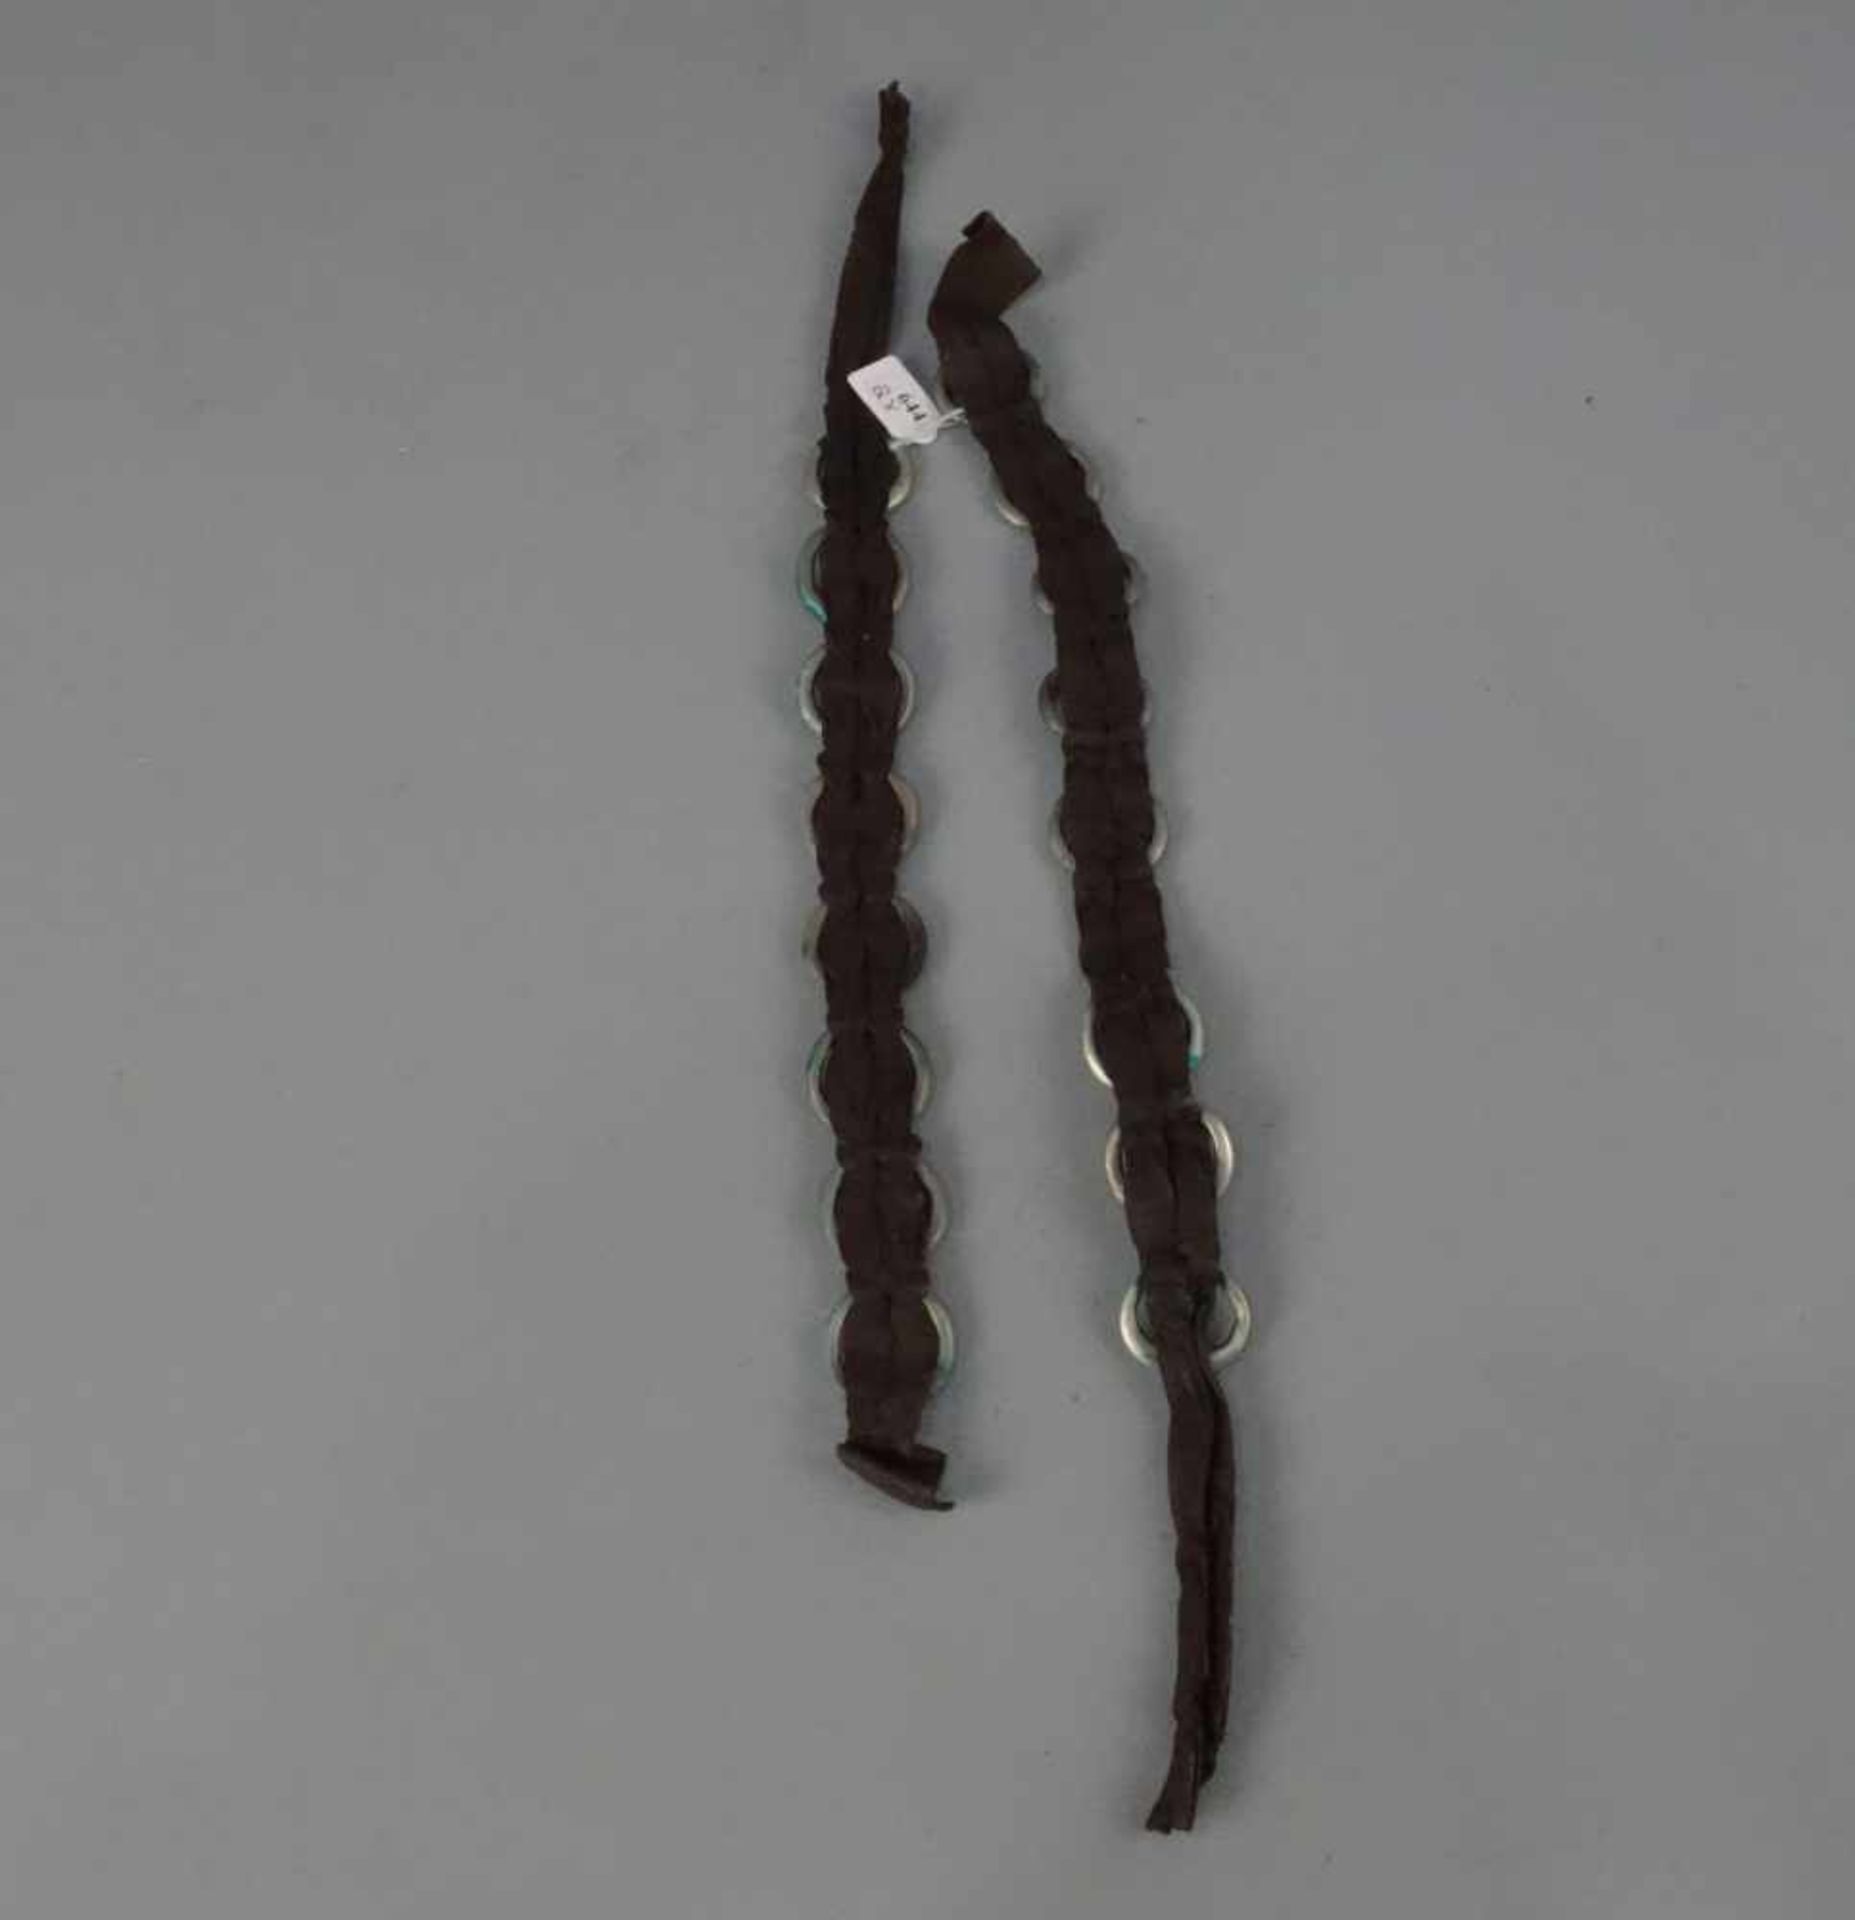 BERBER-SCHMUCK: ZOPFSCHMUCK / oriental hair accessories, Tata, Marokko, Leder und Silber (155 g). - Bild 2 aus 2